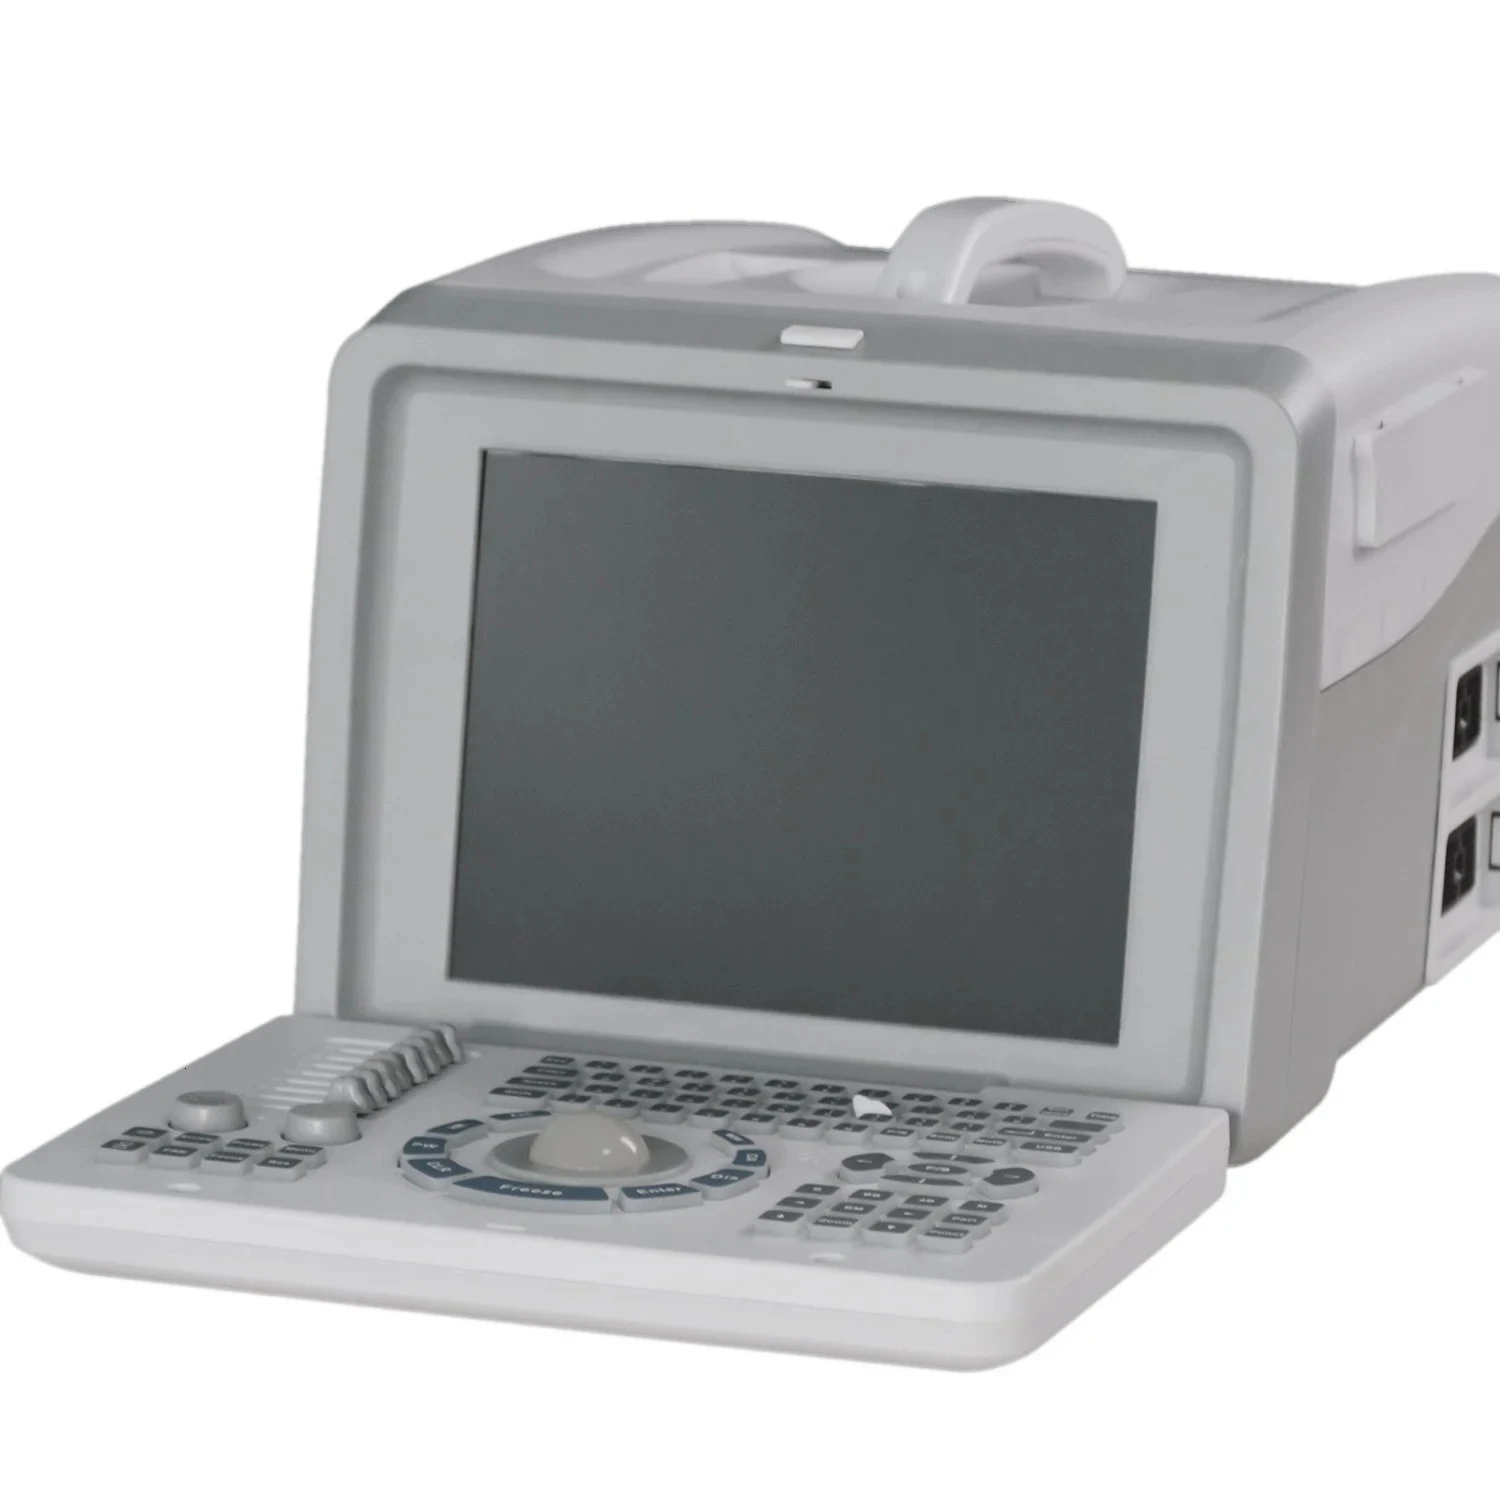 חולים במרפאה השתמש מחיר זול B/W במצב דיגיטלי מלא מכשיר אולטרסאונד נייד מכשיר עם קמור ליניארי בדיקה - 4